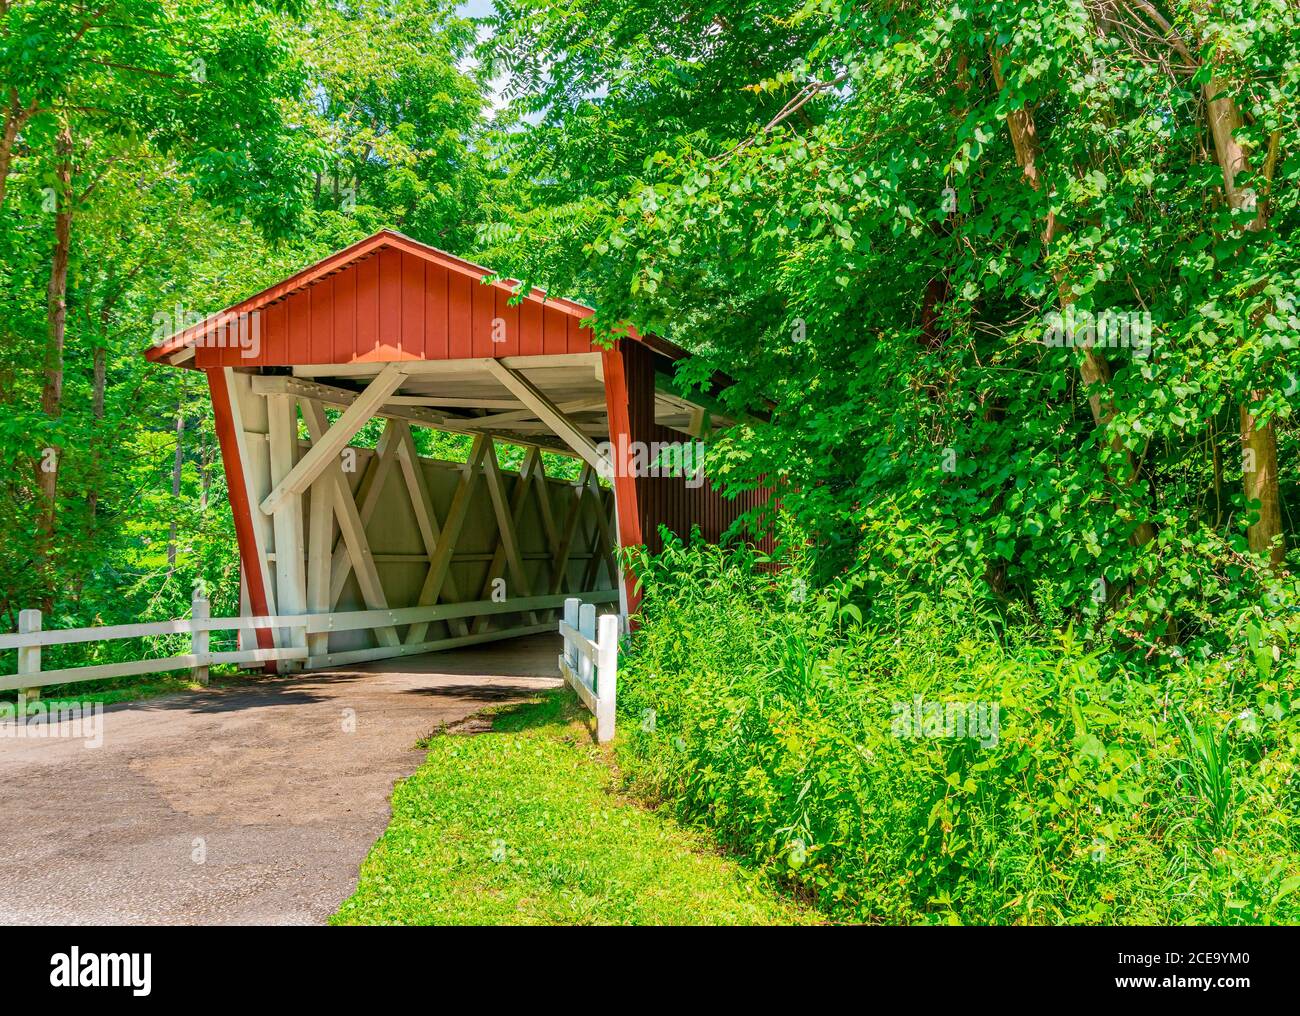 El histórico Puente cubierto Everett cruza Furnace Run Creek en Summit County en Ohio. El puente rojo está en el Parque Nacional del Valle de Cuyahoga. Foto de stock